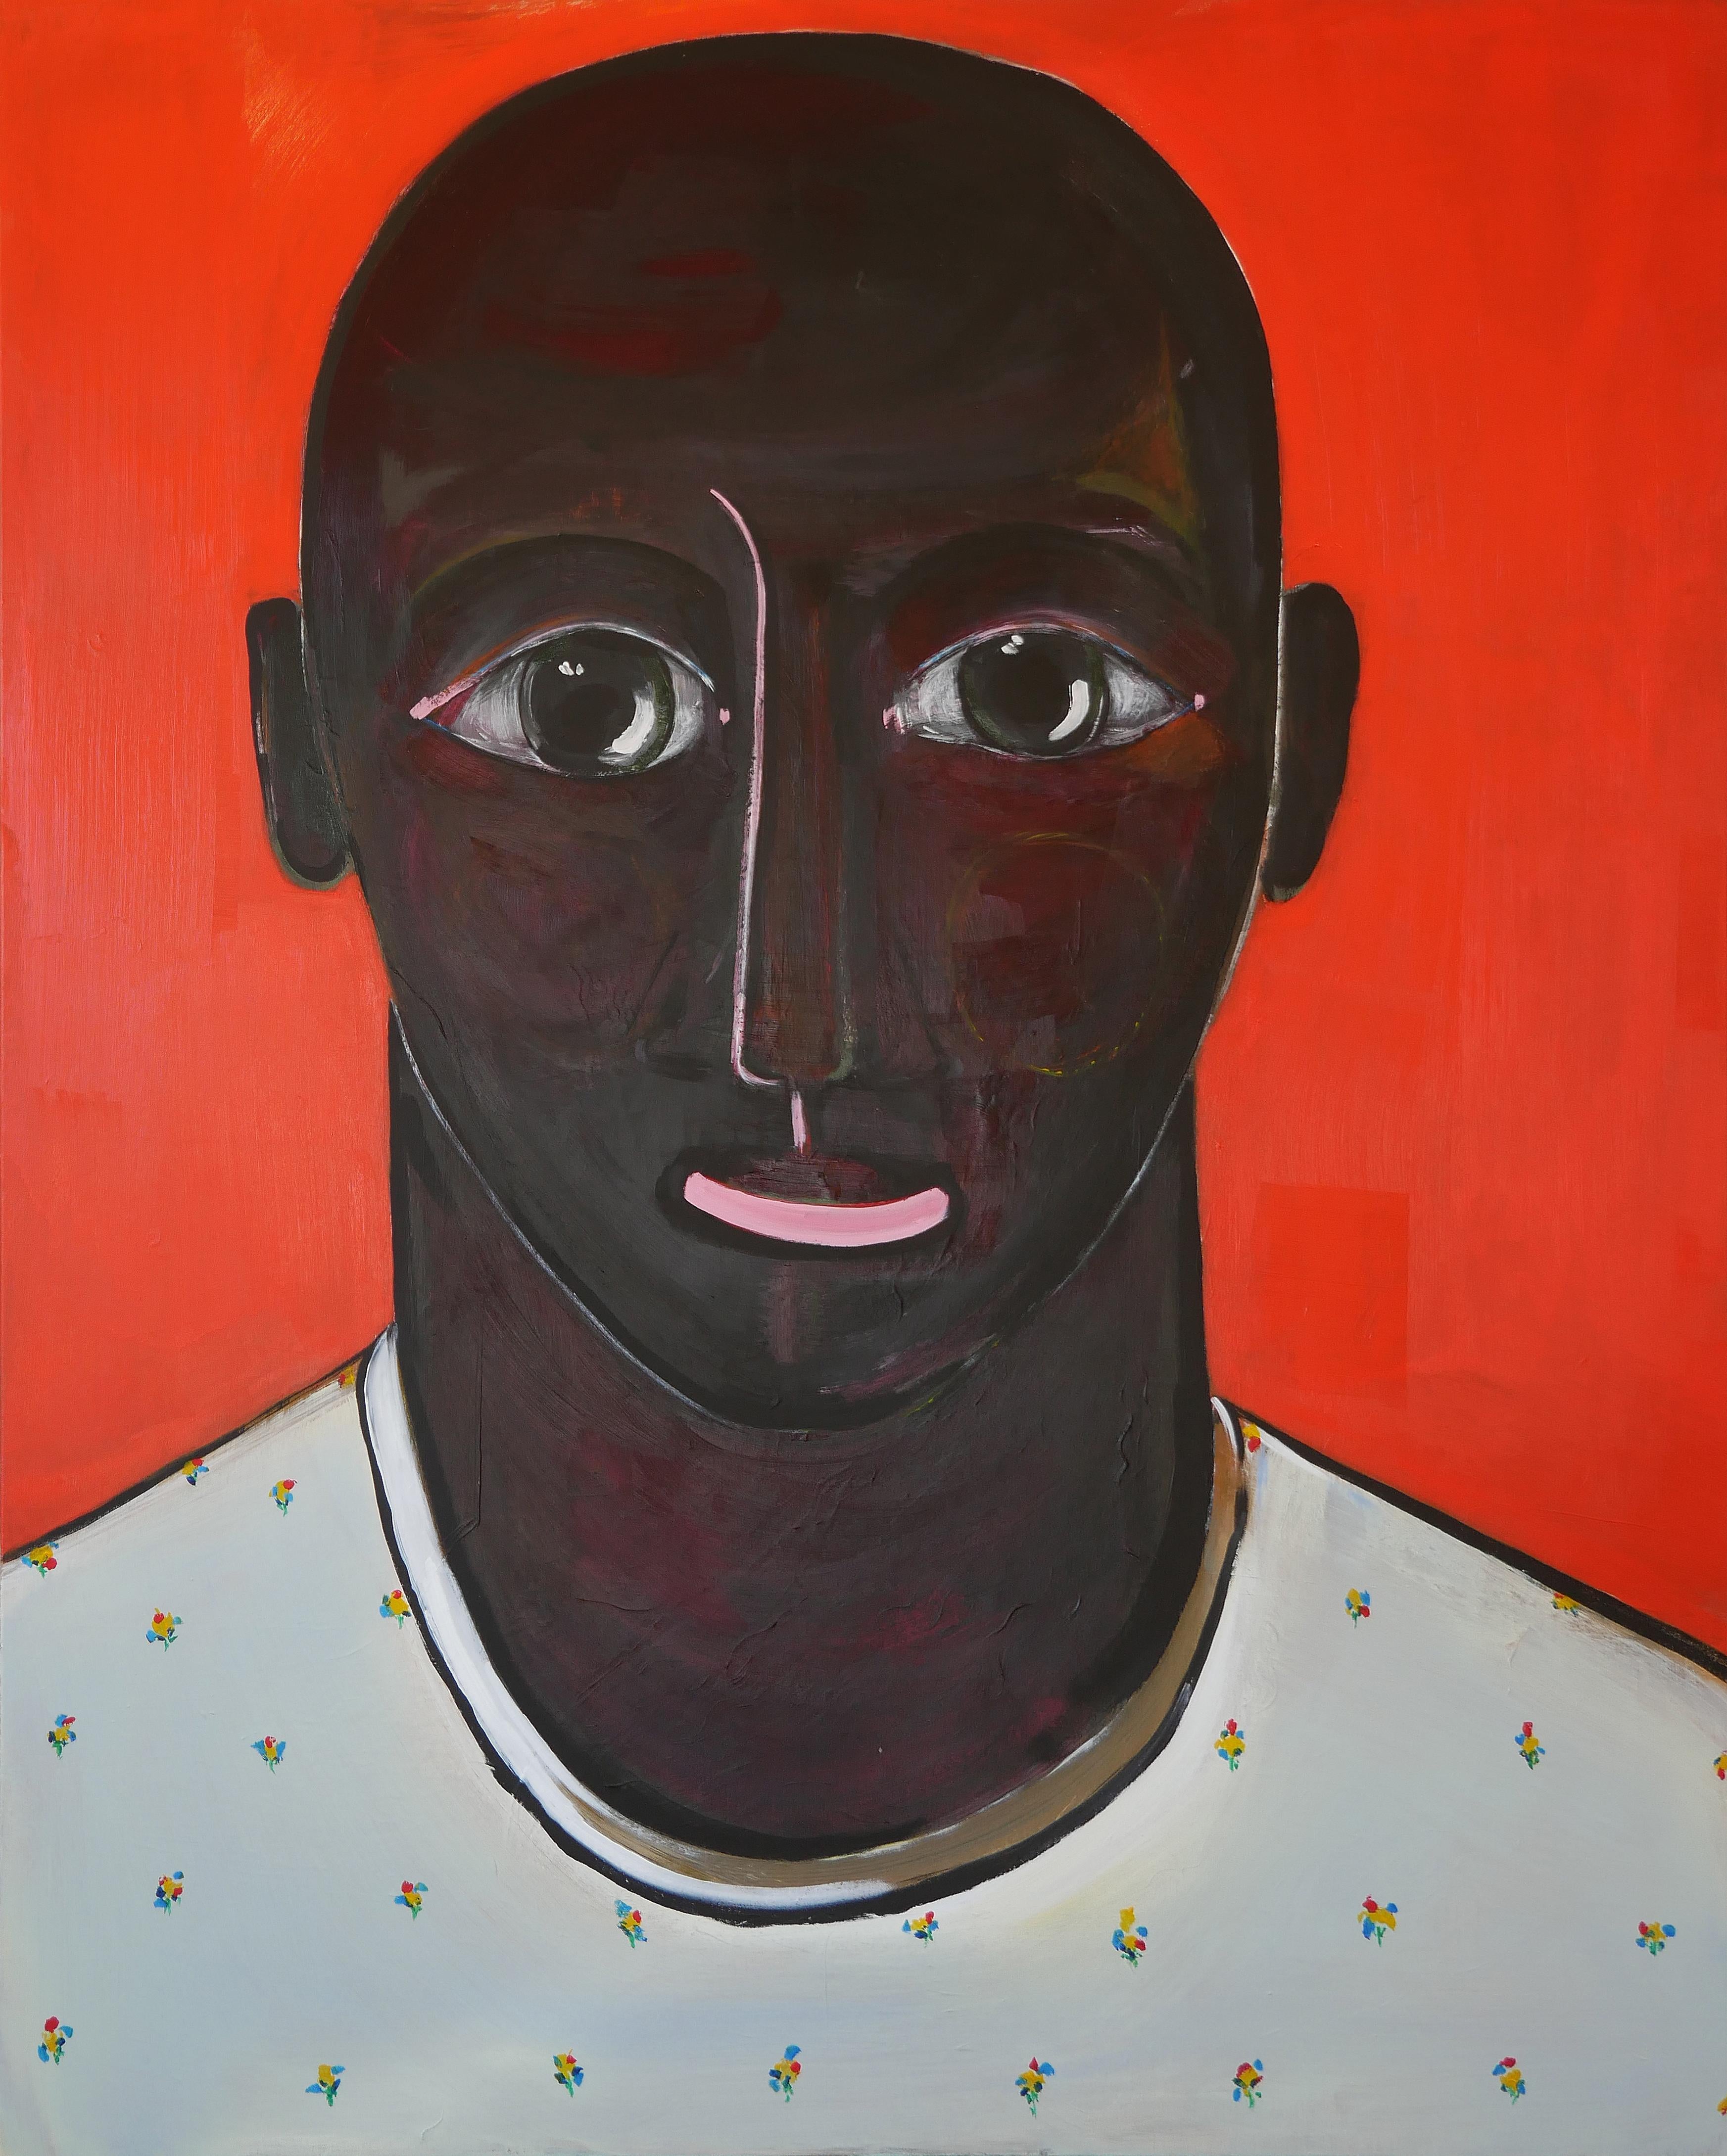 Moisés Villafuerte Portrait Painting - "Tierno" Contemporary Portrait of a Male Figure Against Bright Orange Background